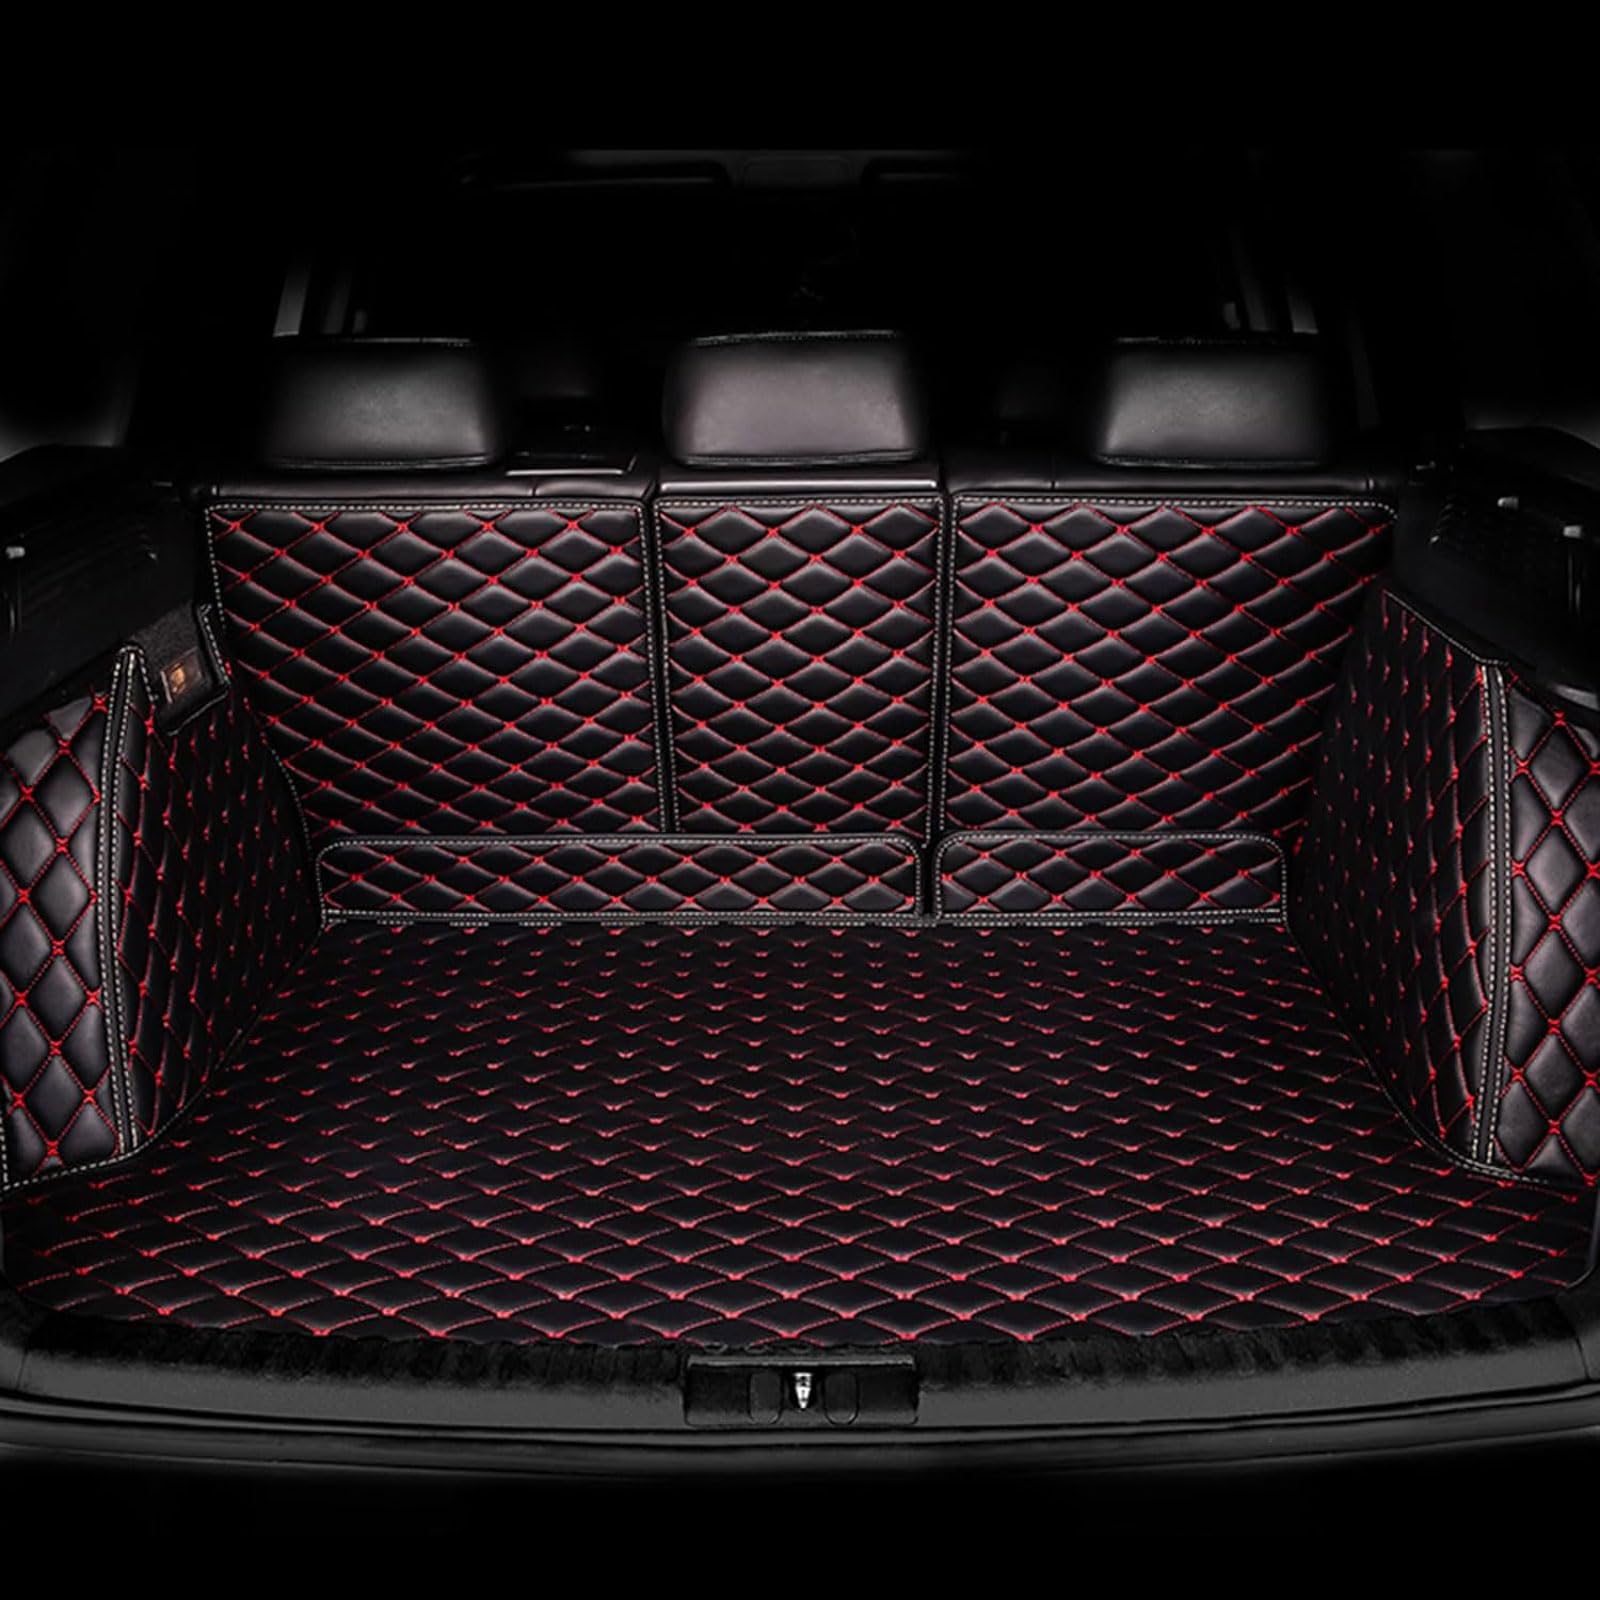 Auto Kofferraummatte für Mazda CX-9 2007-2012 2013 2014 2015, Vollabdeckung Leder Kofferraumwanne, Kofferraum Schutzmatte Innenraum ZubehöR,Black-Red von YYQWEE